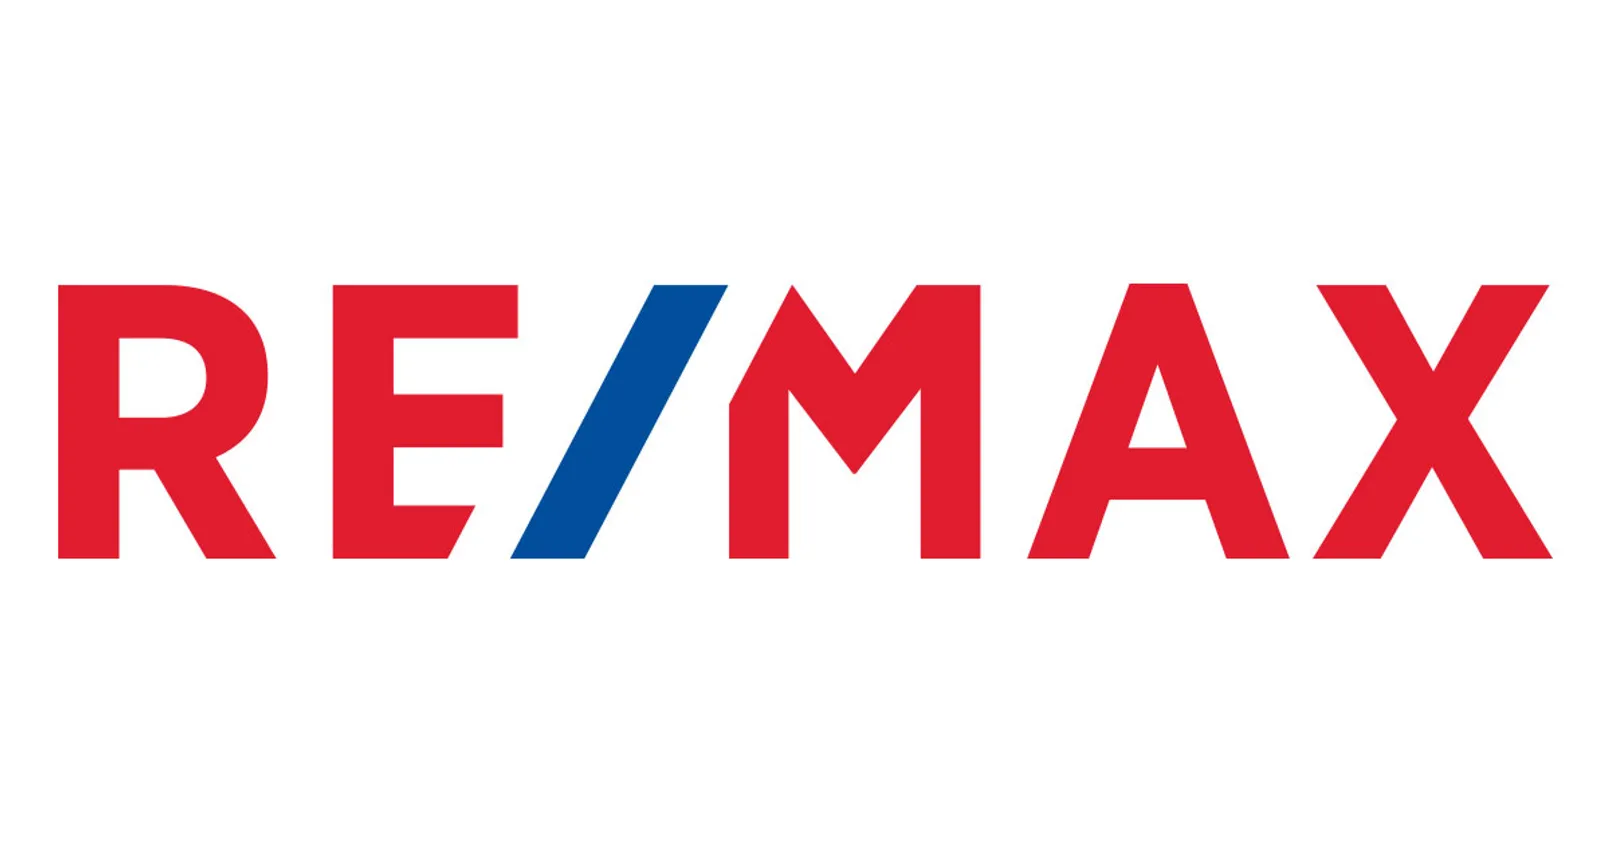 Remax Logo Og.jpg